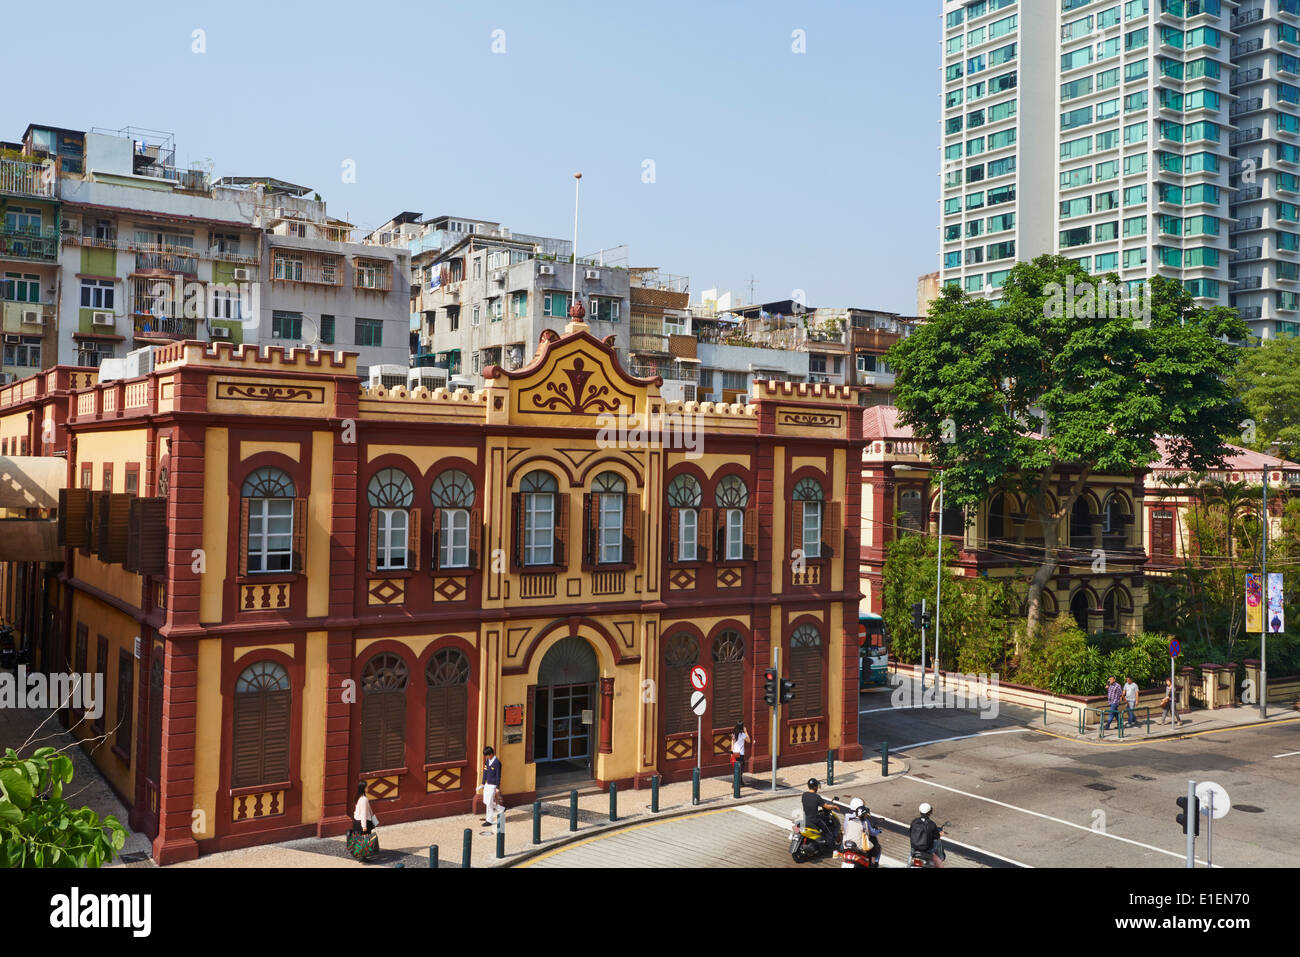 Cina, Macau, architettura coloniale su Avenida do Conselheiro Ferreira de Almeida Foto Stock